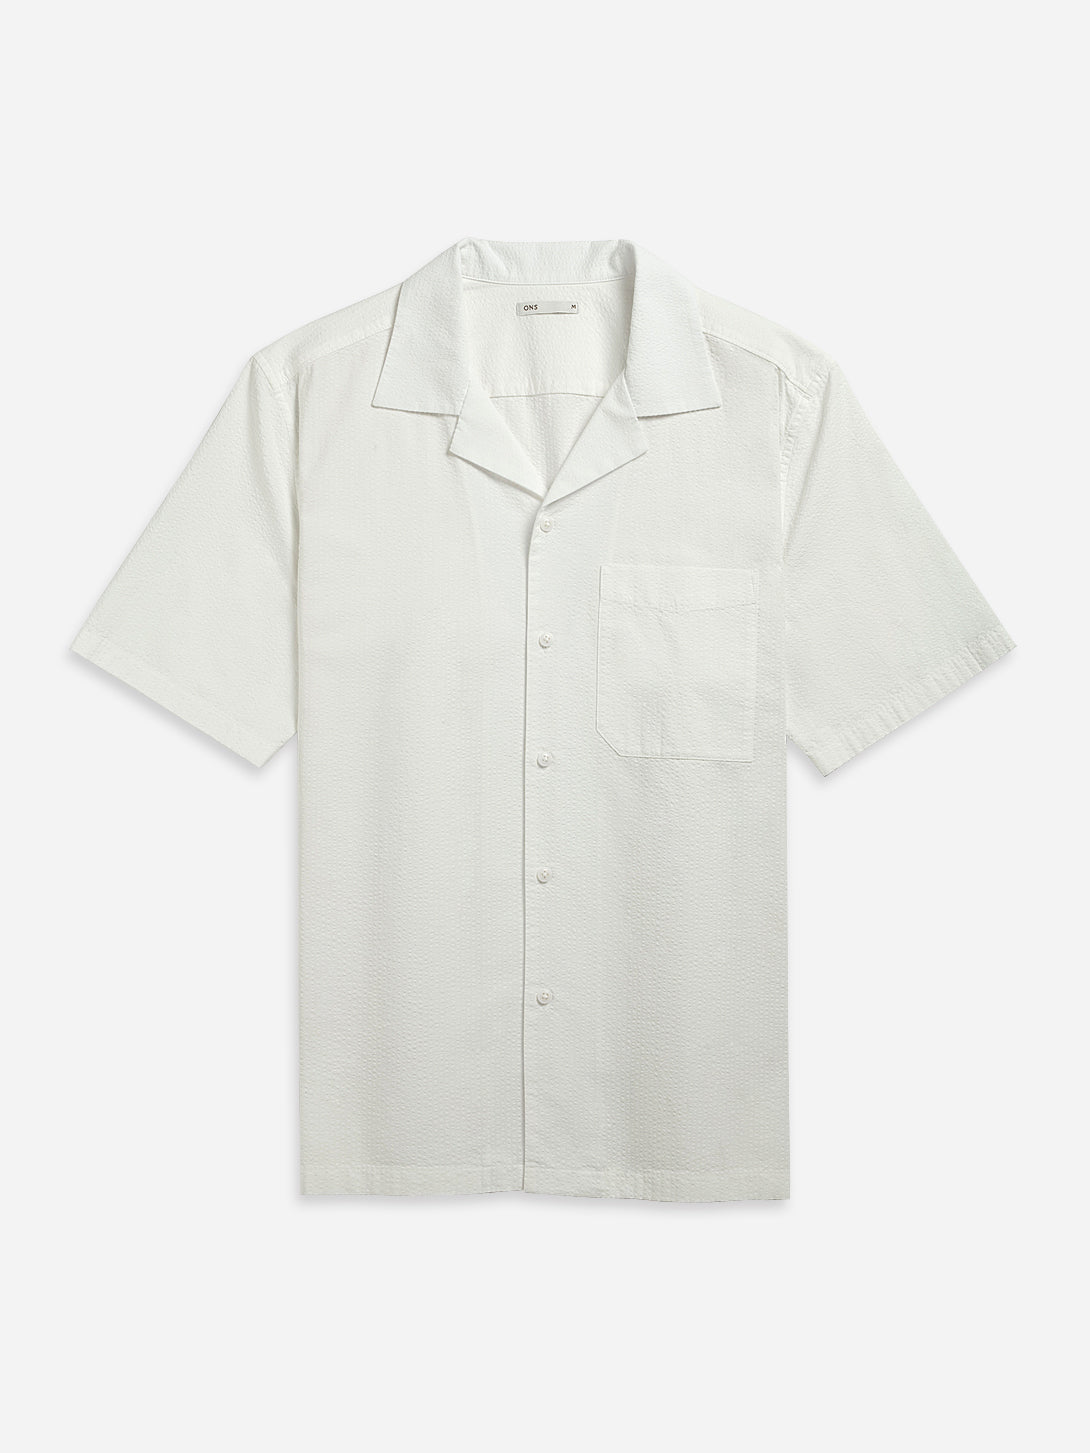 Off White Rockaway Seersucker Shirt Mens Camp Collar Textured Shirt